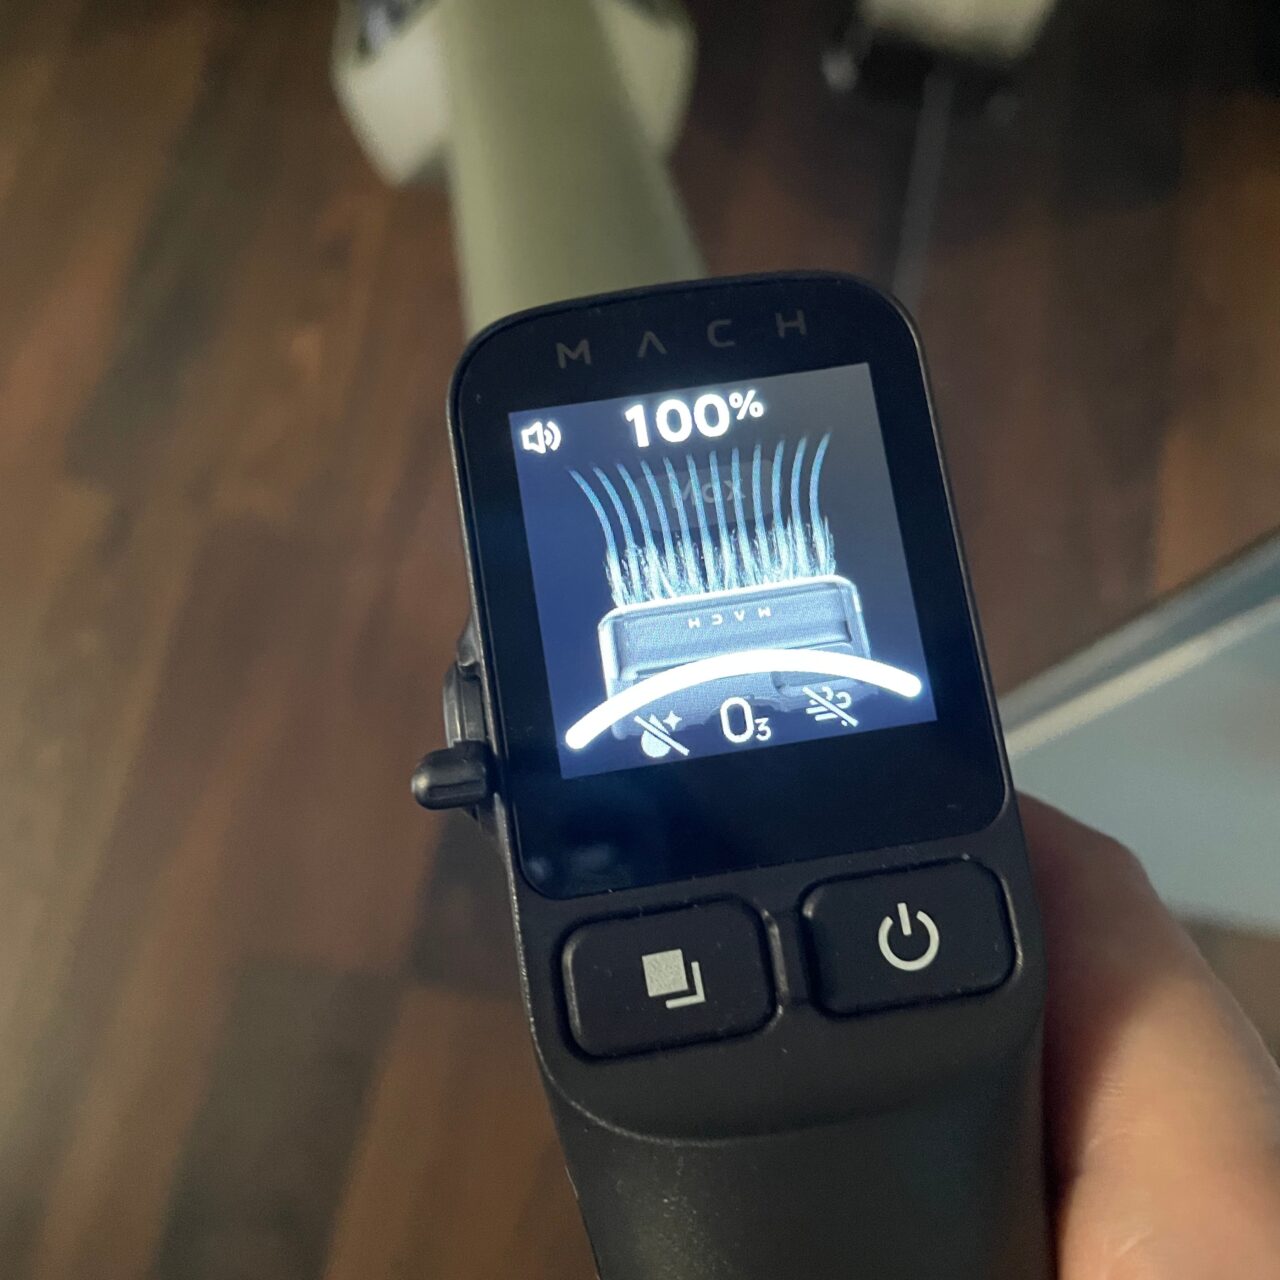 Czyjś dłoń trzymający maszynkę do golenia z wyświetlaczem pokazującym naładowanie baterii w 100% oraz ikonę ostrza.